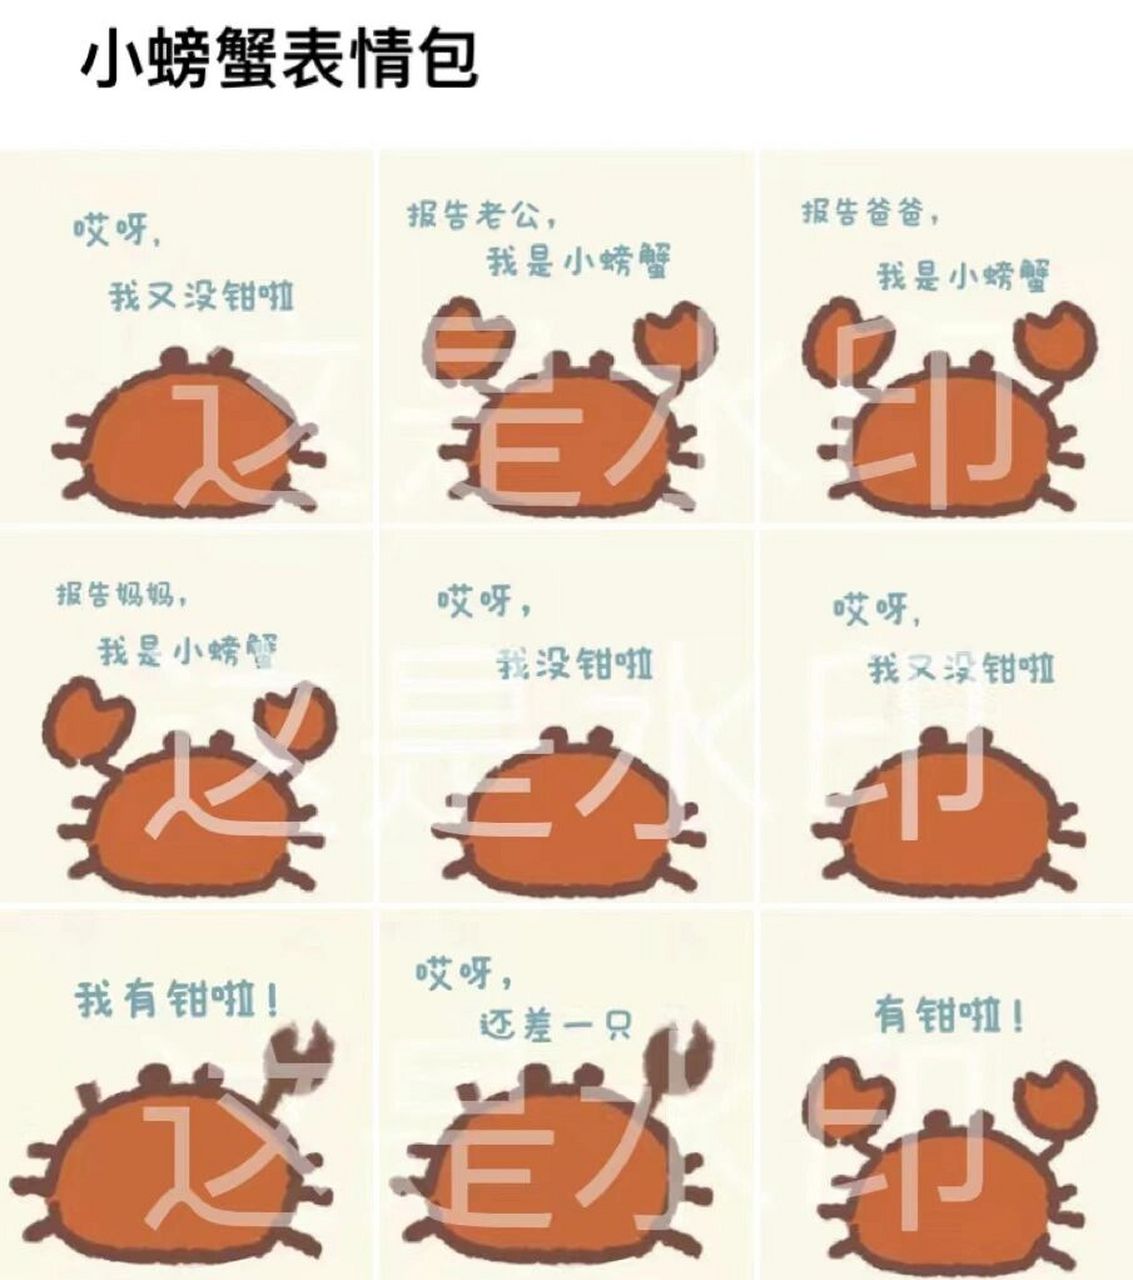 螃蟹走路表情包图片